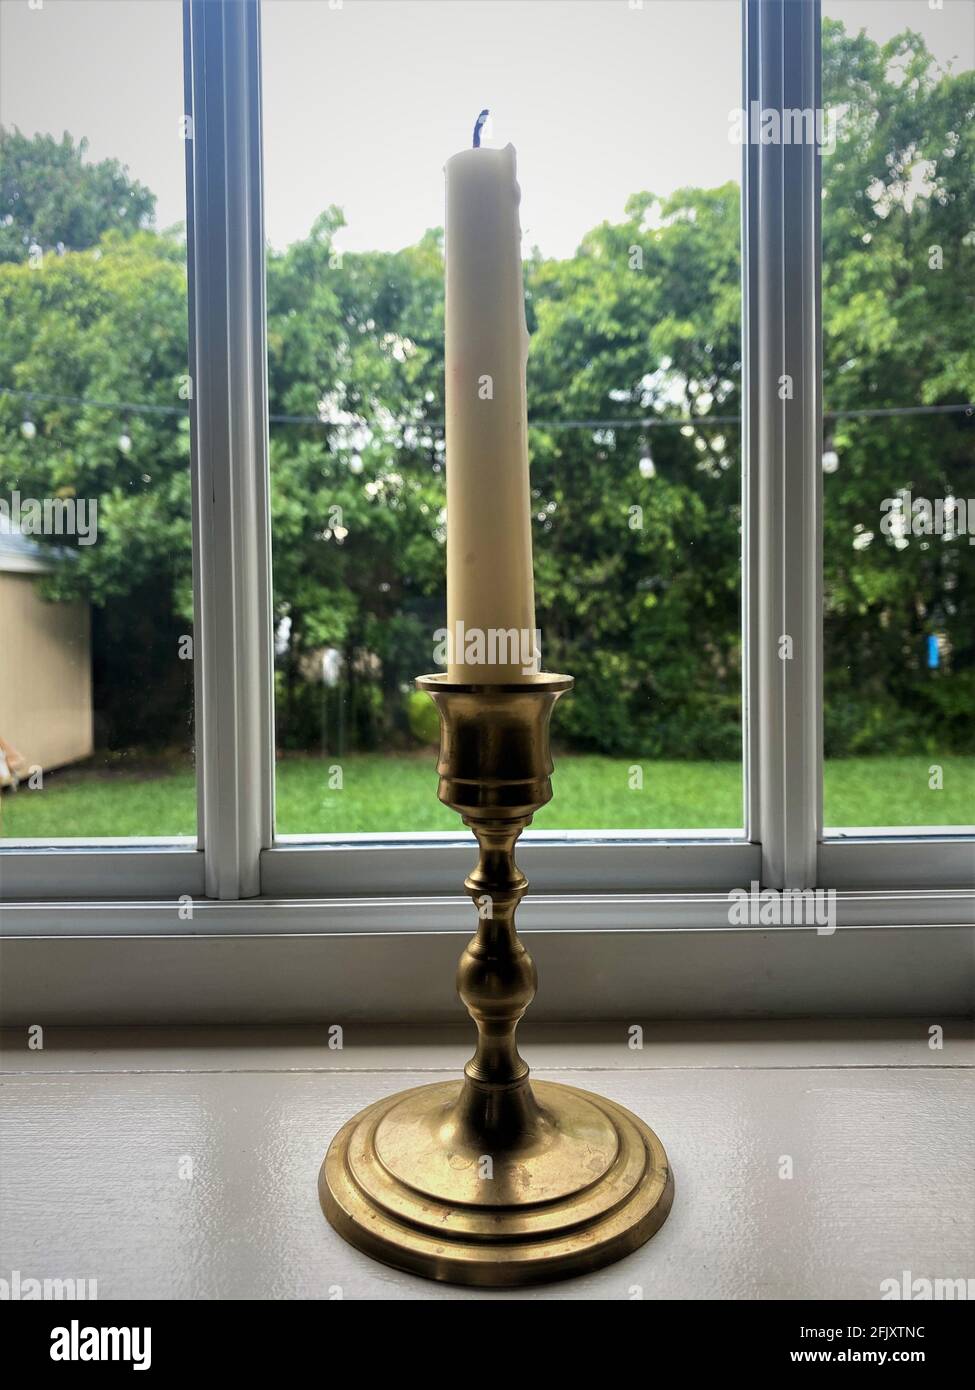 Weiße Kerze auf einem alten goldenen Messingleuchter, der durch ein Küchenfenster auf einen grünen Hof blickt. Stockfoto